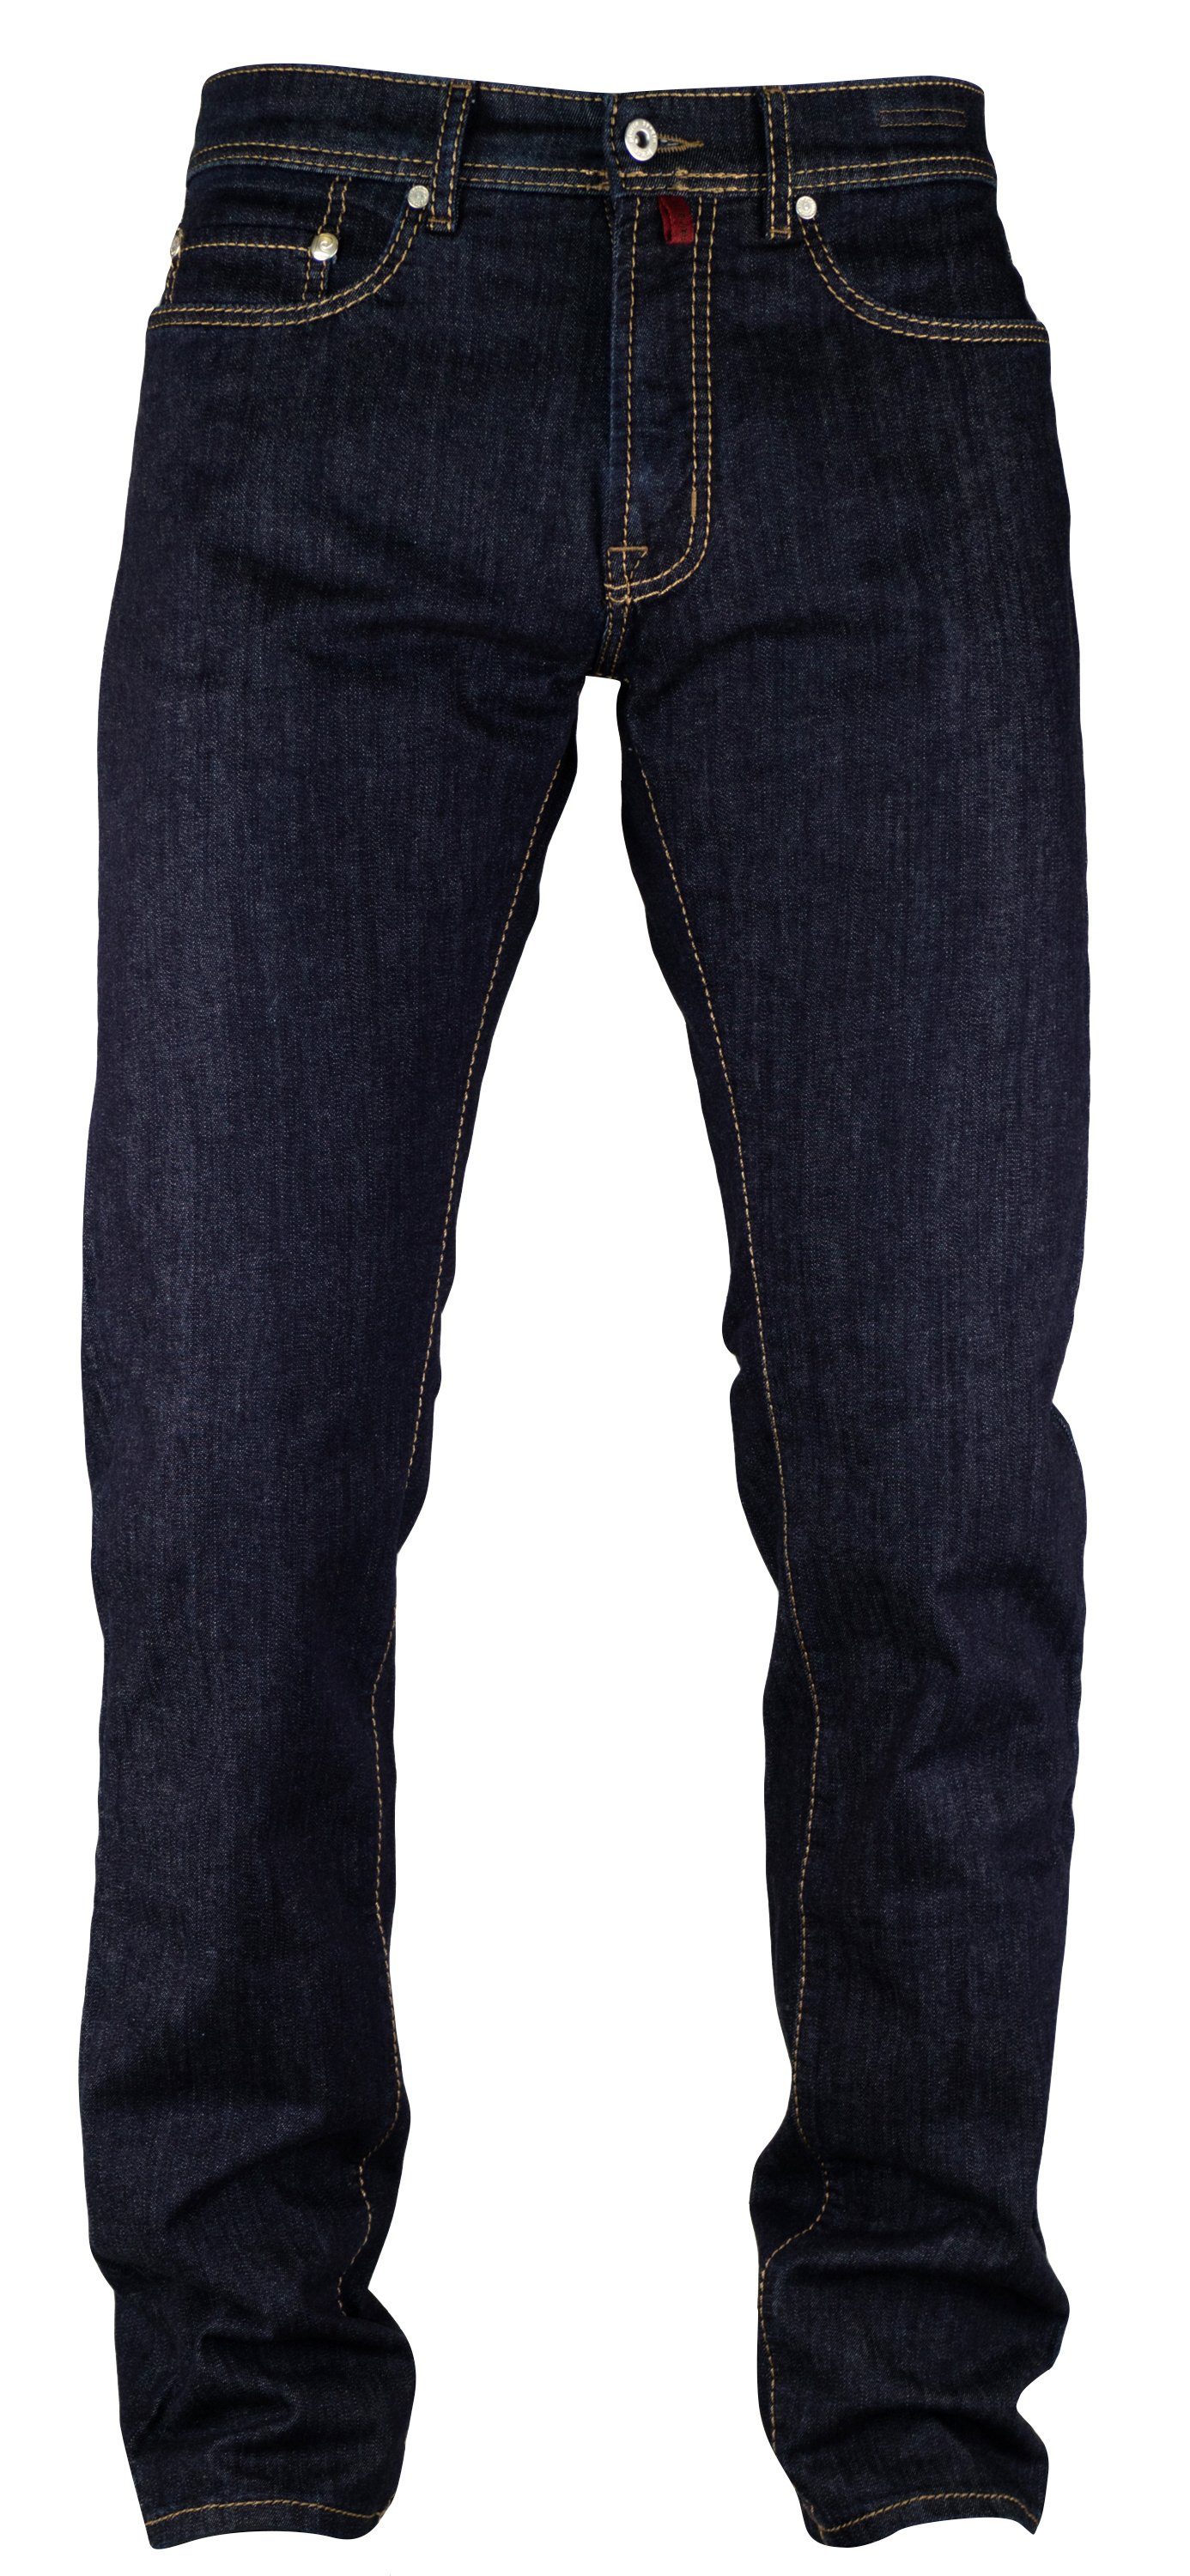 Pierre Cardin 5-Pocket-Jeans PIERRE CARDIN LYON mid blue vintage used washed 3091 7144.04 Clear Blue